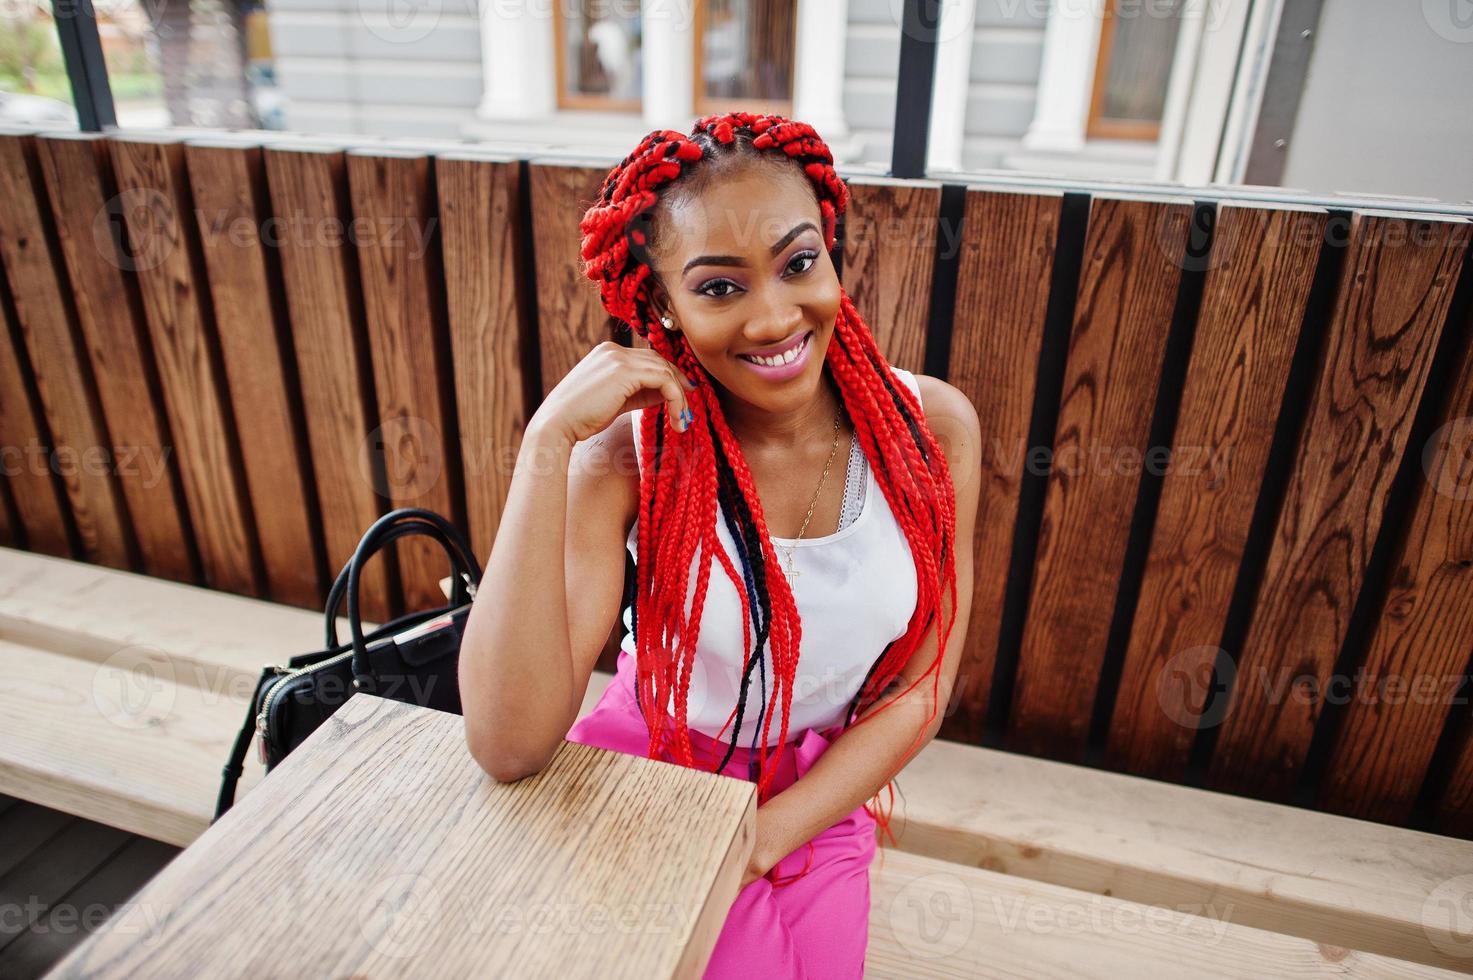 chica afroamericana de moda en pantalones rosas y rastas rojas posadas al aire libre. foto